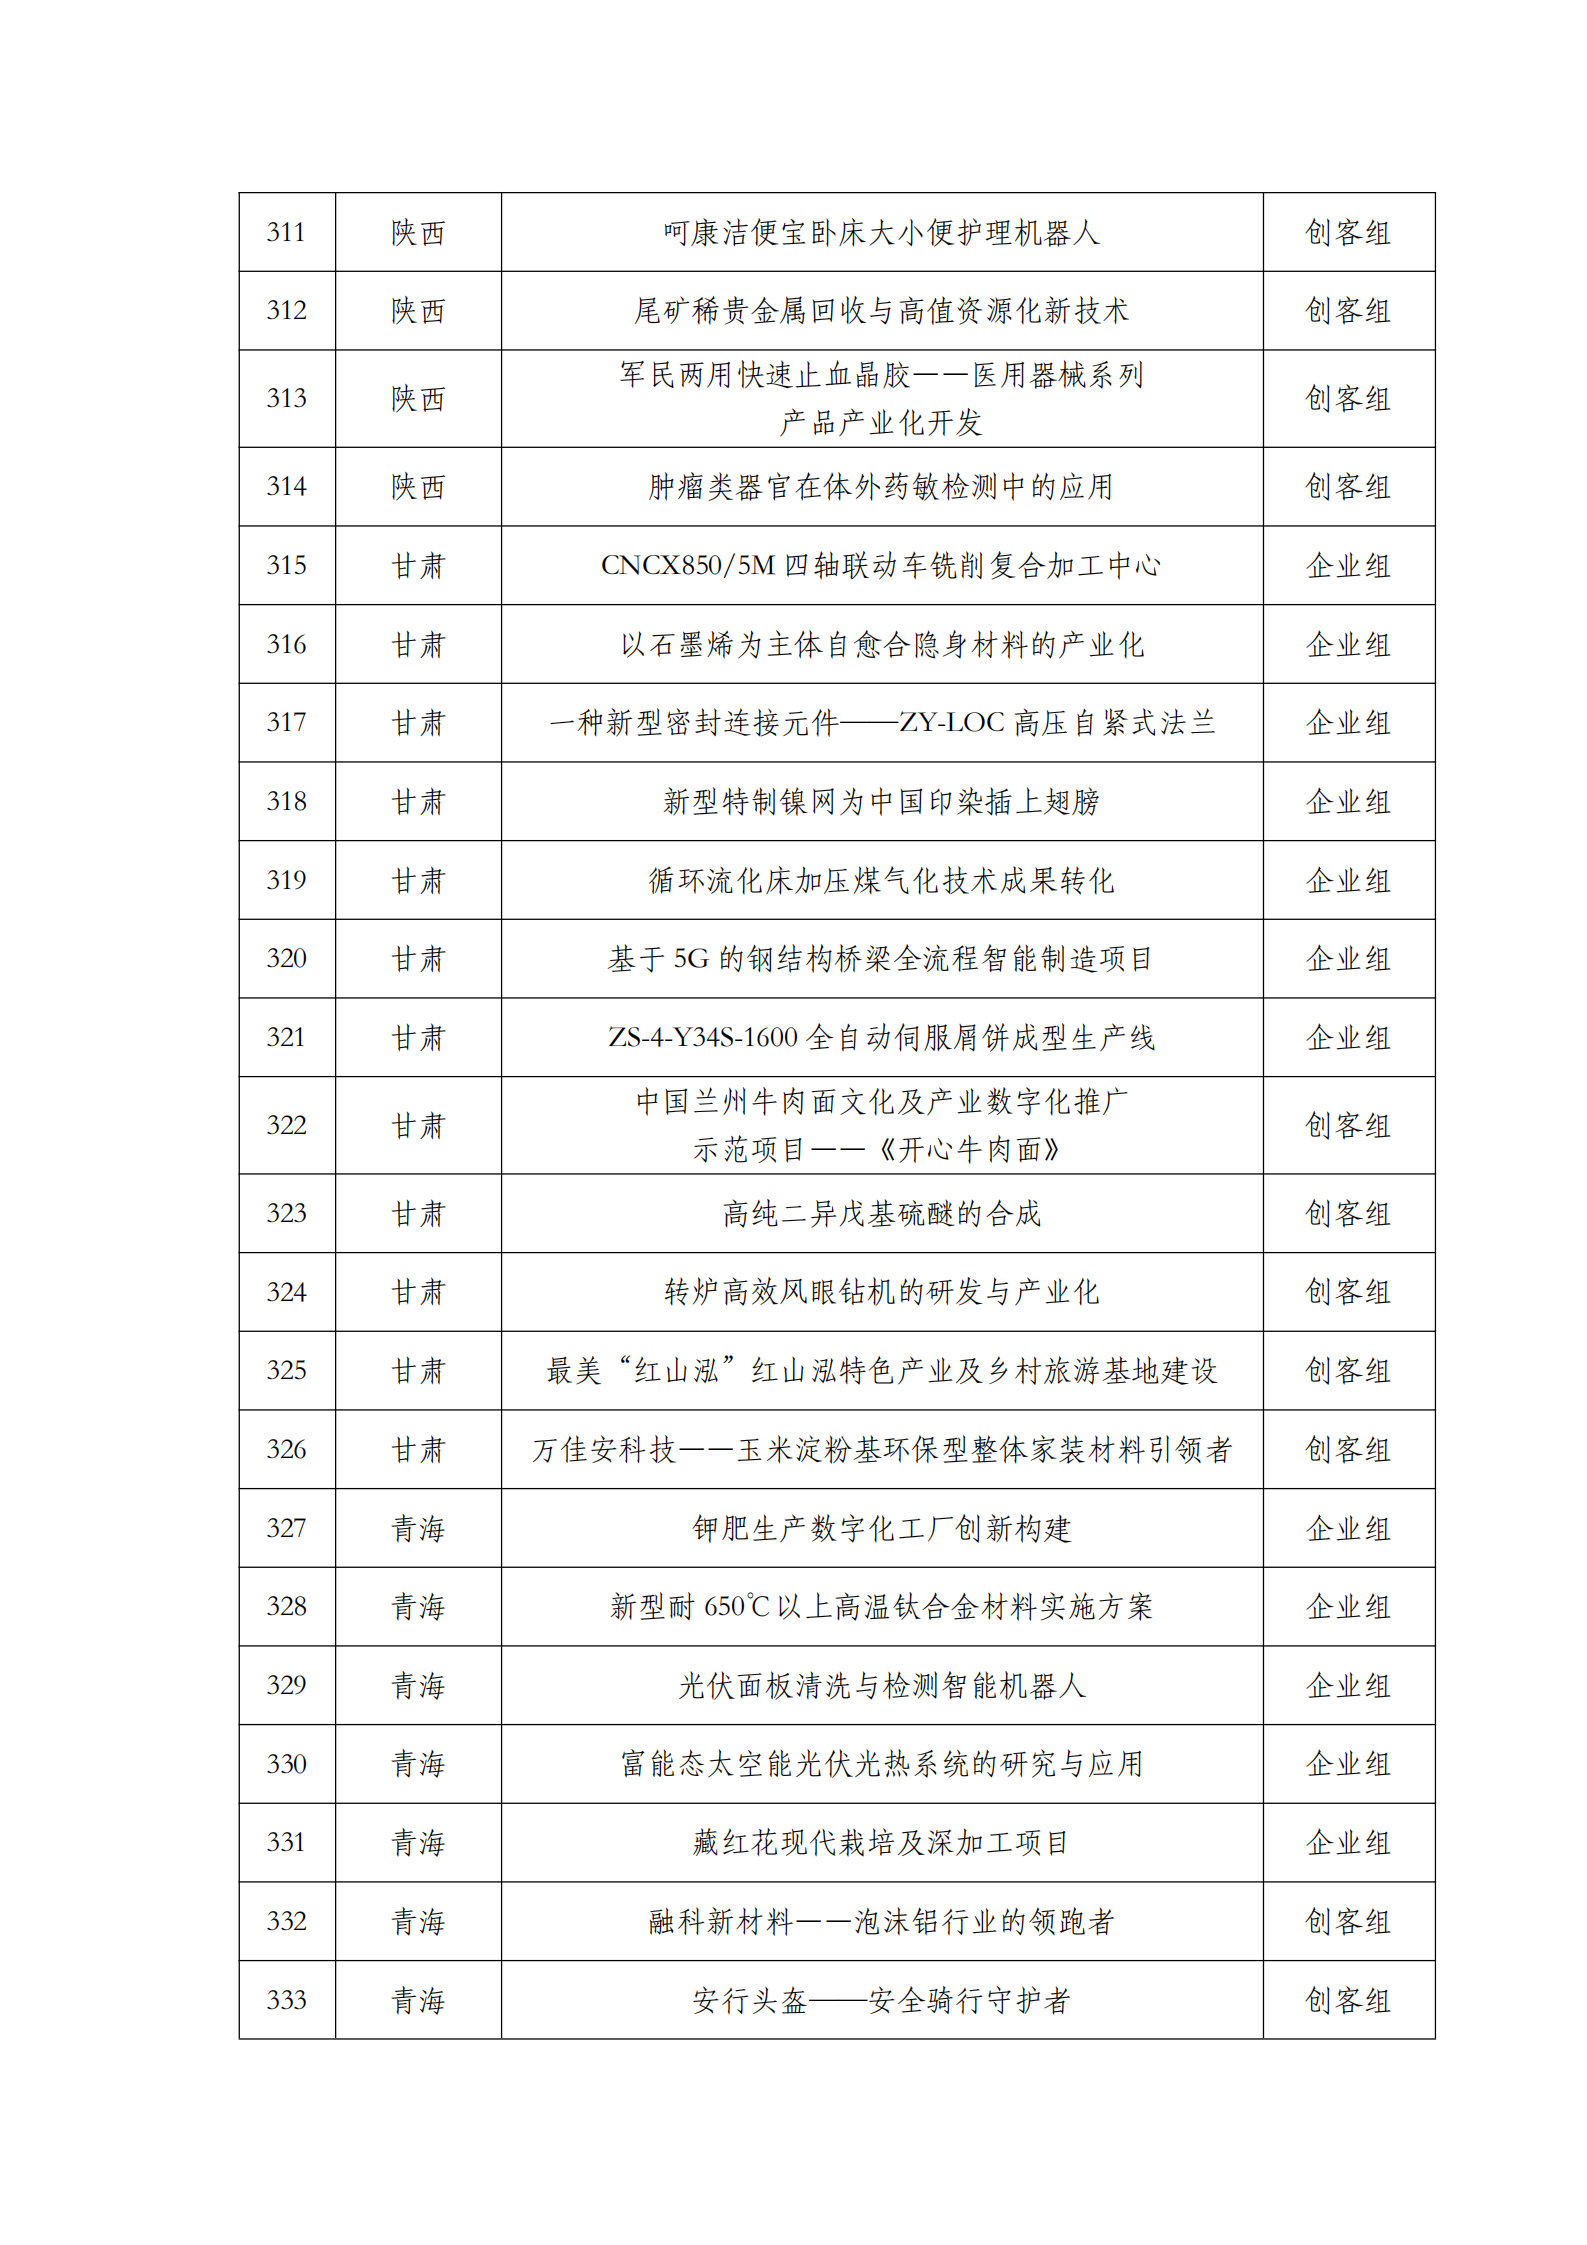 第六届“创客中国”中小企业创新创业大赛500强公示名单_14.png